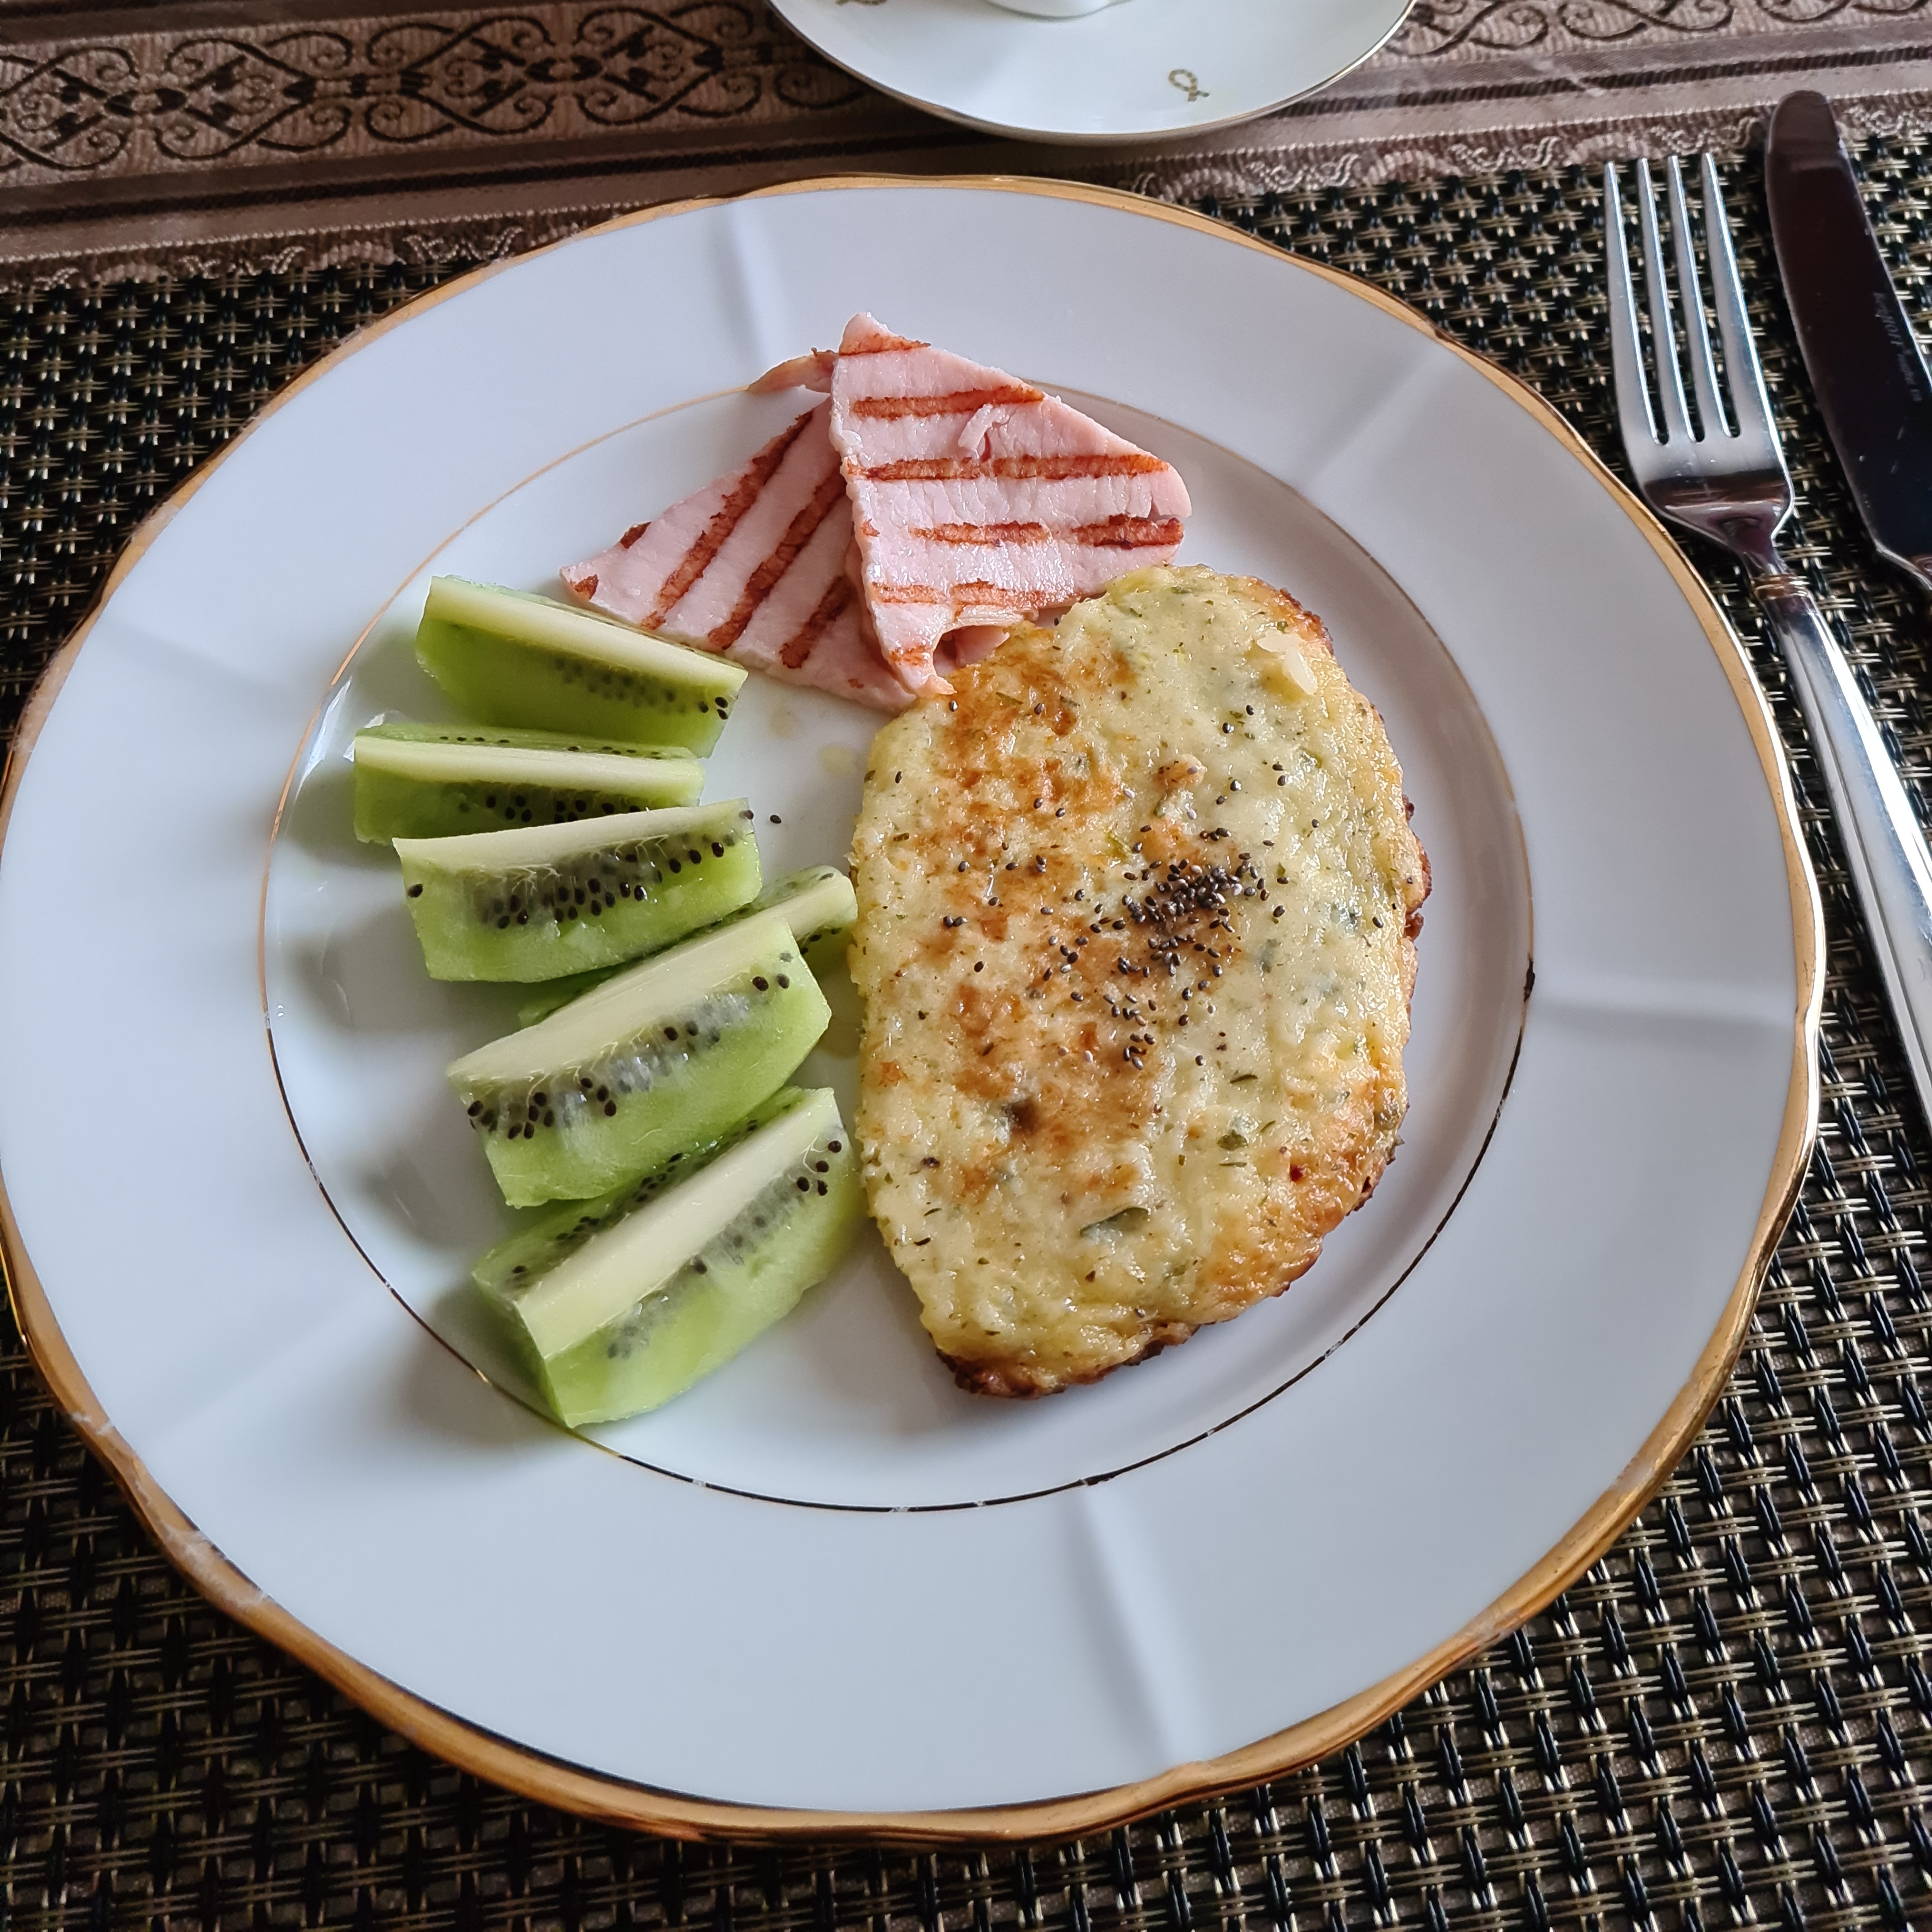 ПП завтрак: сырная лепешка с зеленью